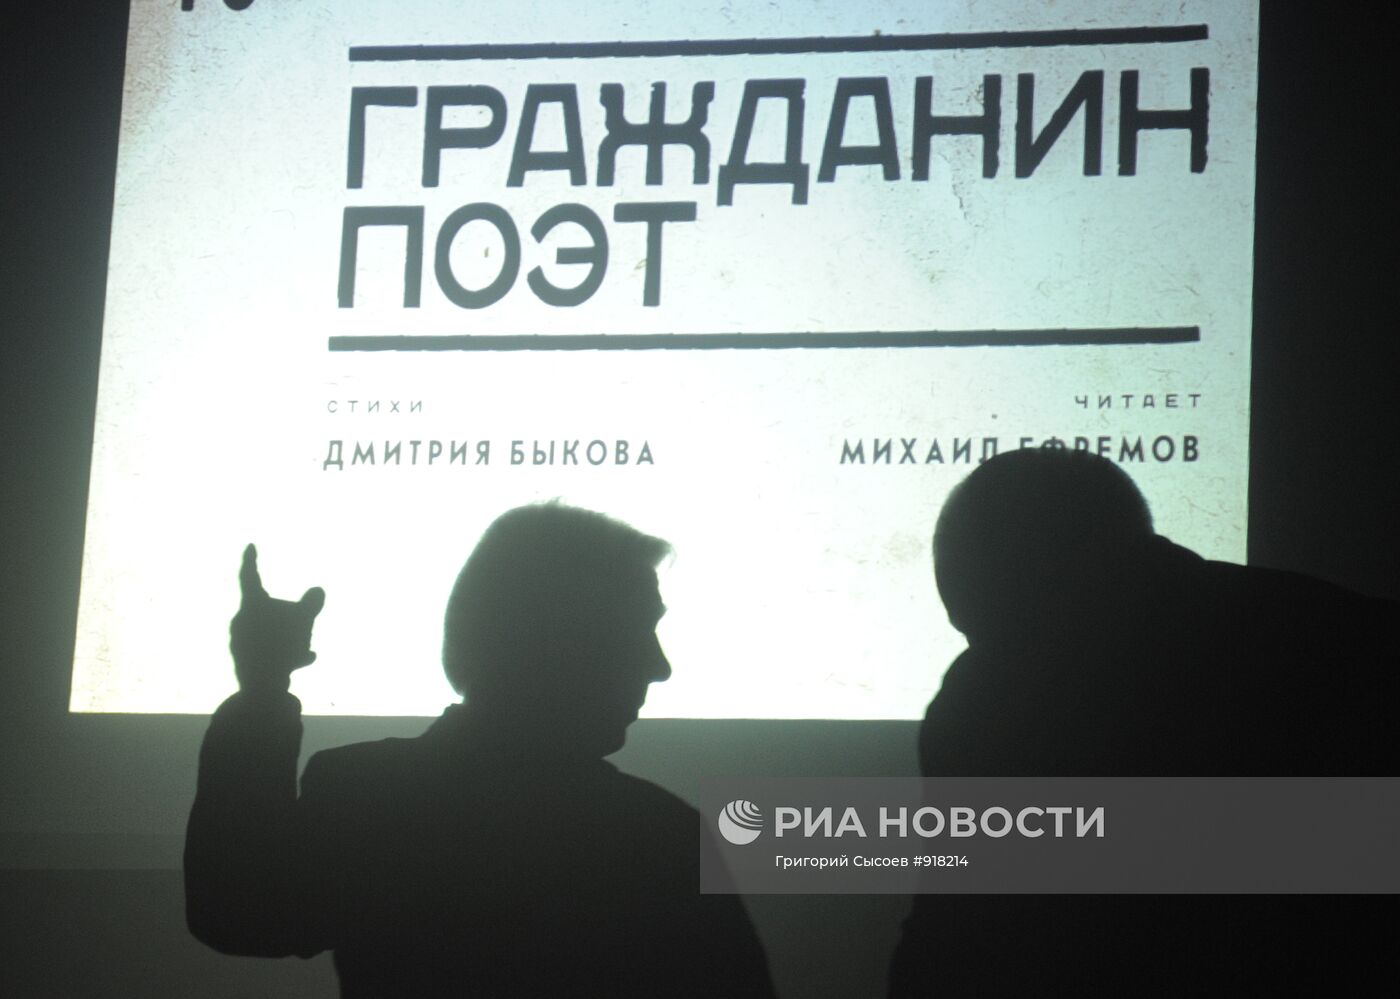 Премьера проекта "Гражданин поэт" на Винзаводе